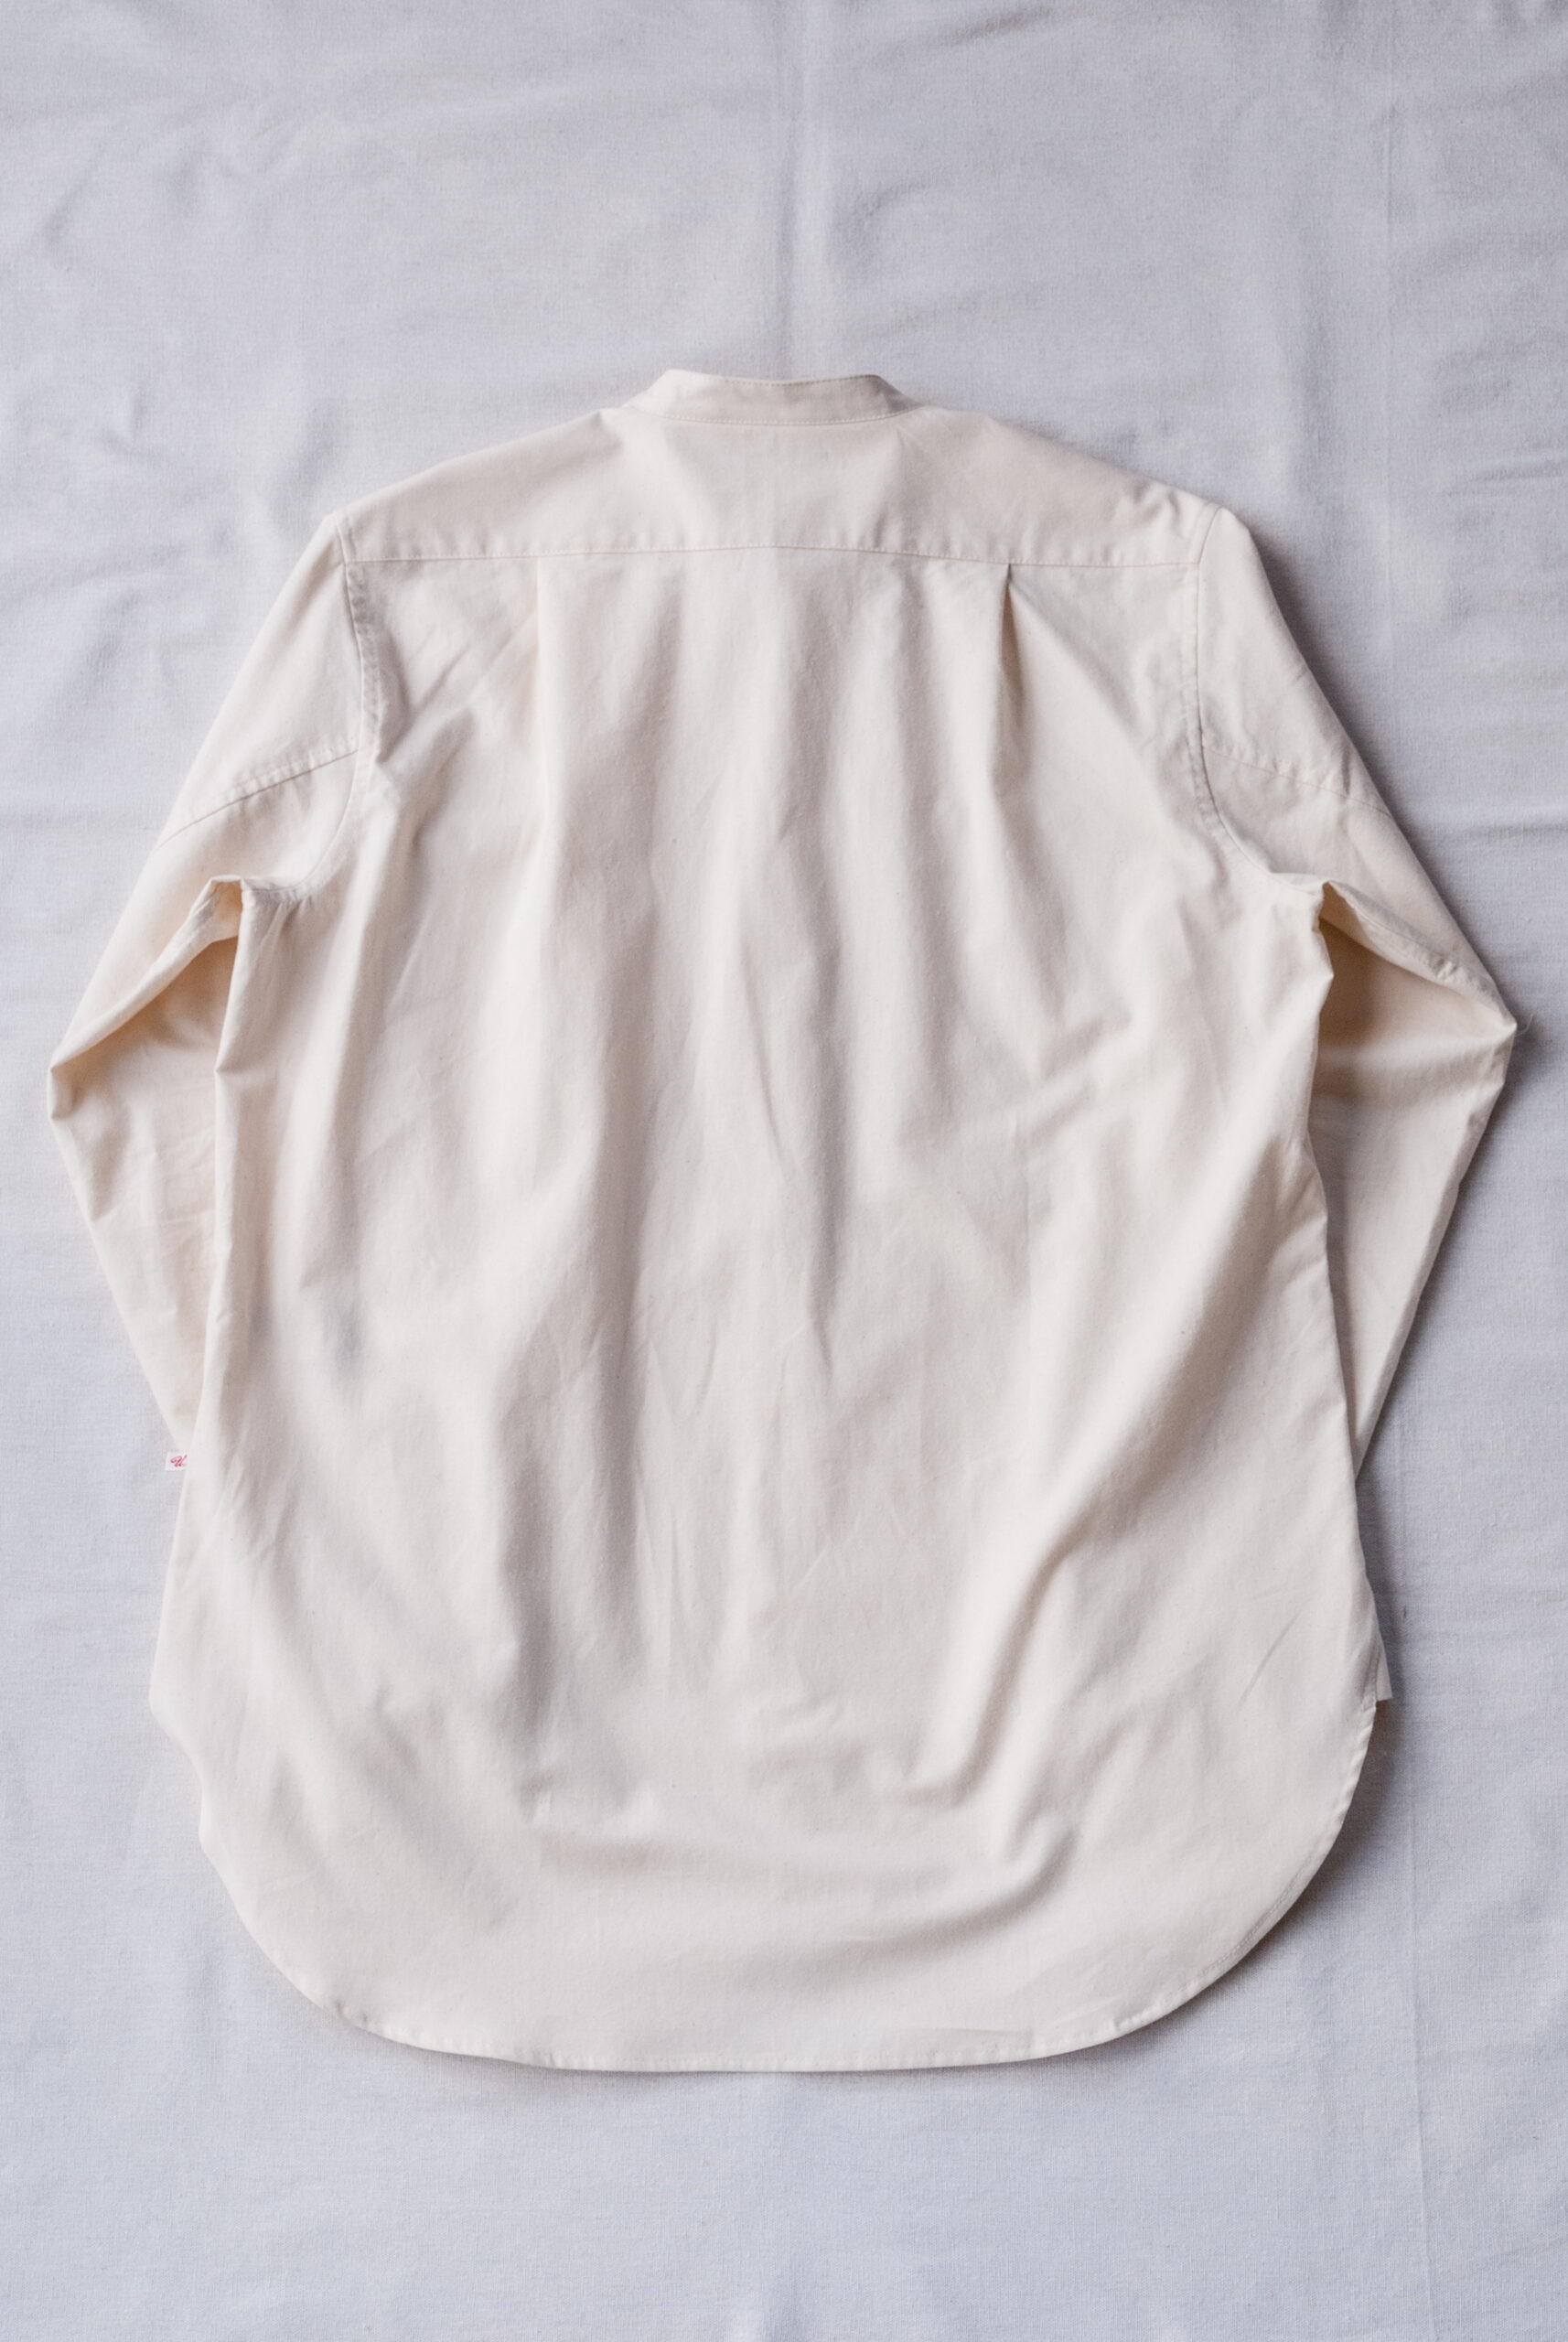 Frank Leder ’s Vintage Bedsheet Old Style Stand Collar Shirt Natural